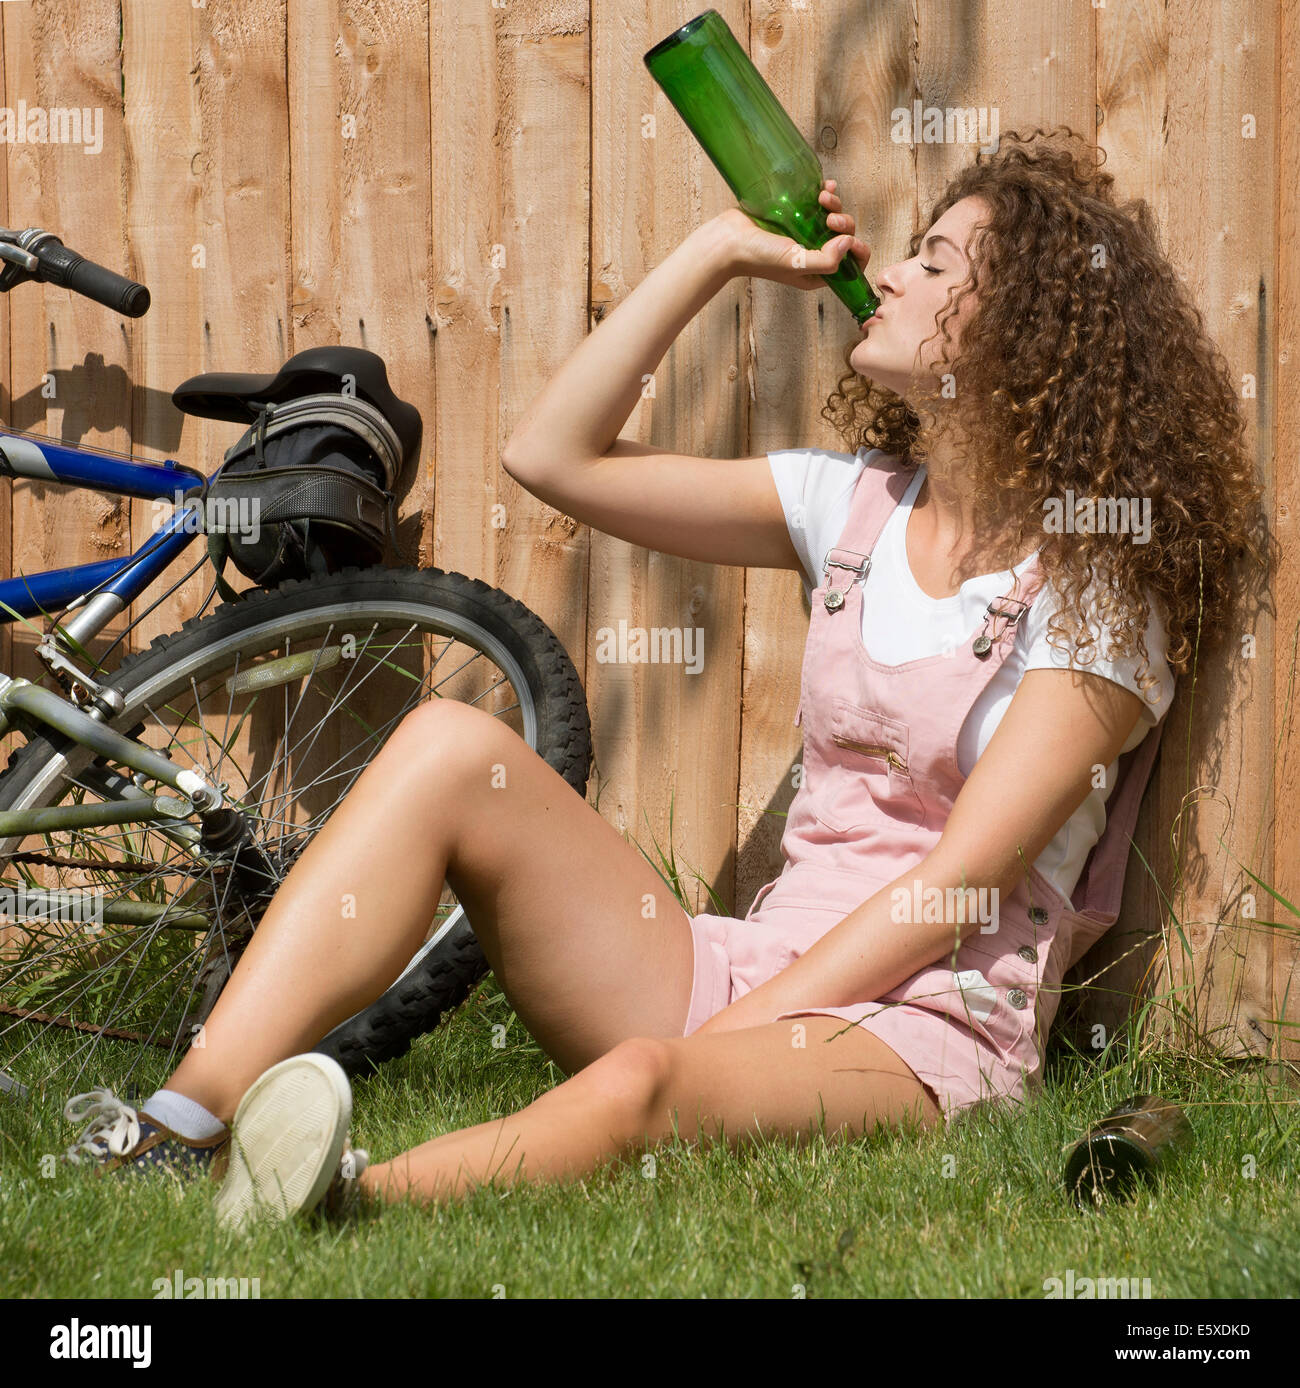 Teenager-Mädchen stützte sich auf Gartenzaun trinken Alkohol aus einer Glasflasche Stockfoto